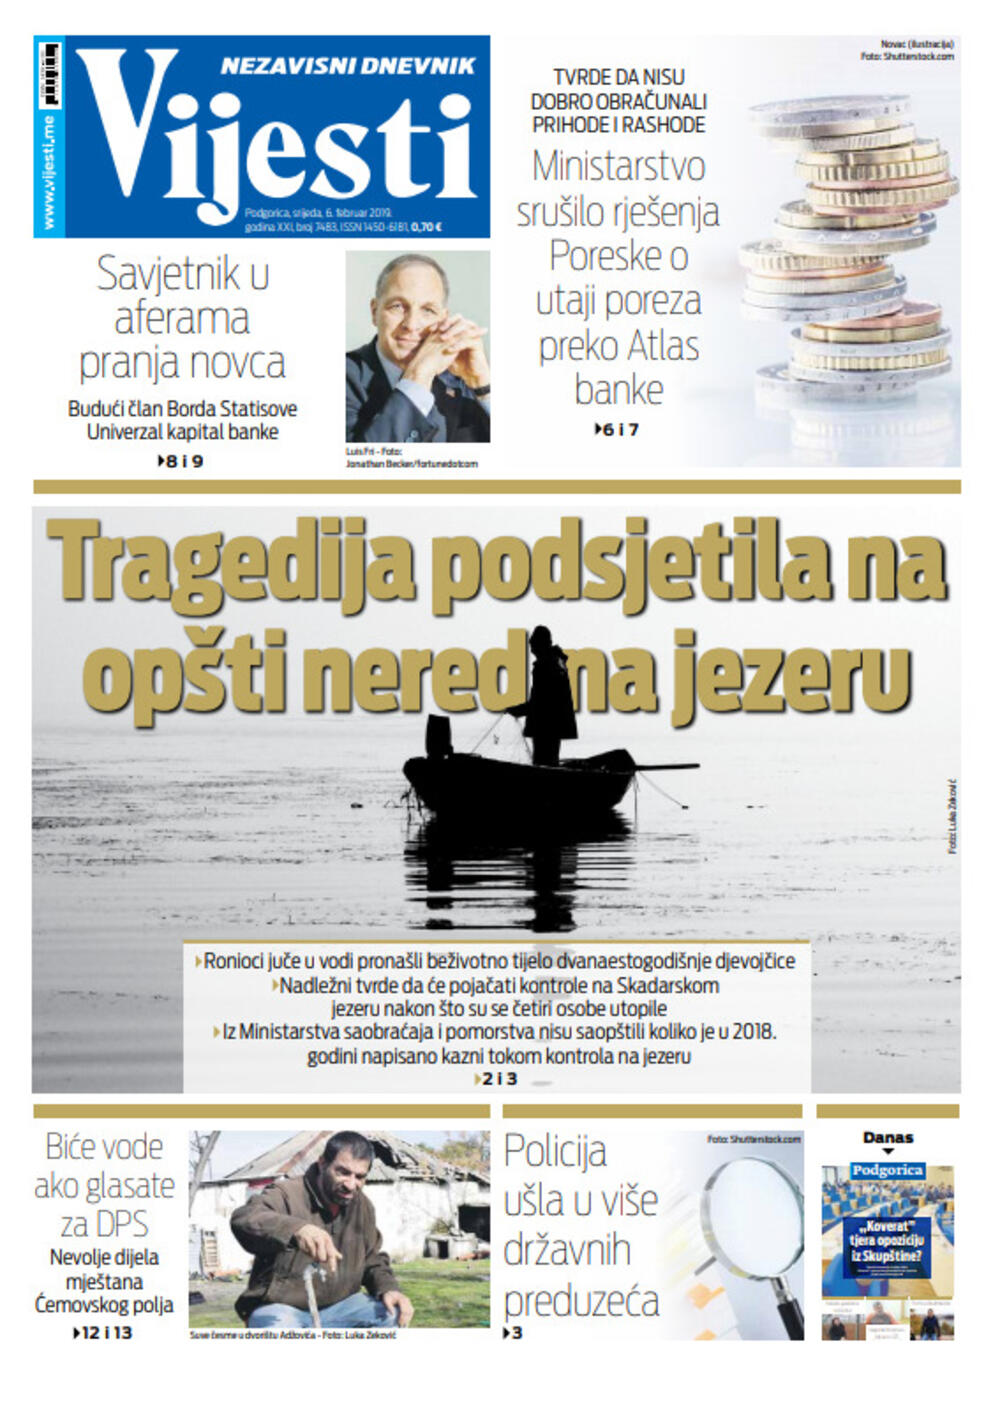 Naslovna strana "Vijesti" za šesti februar, Foto: Vijesti